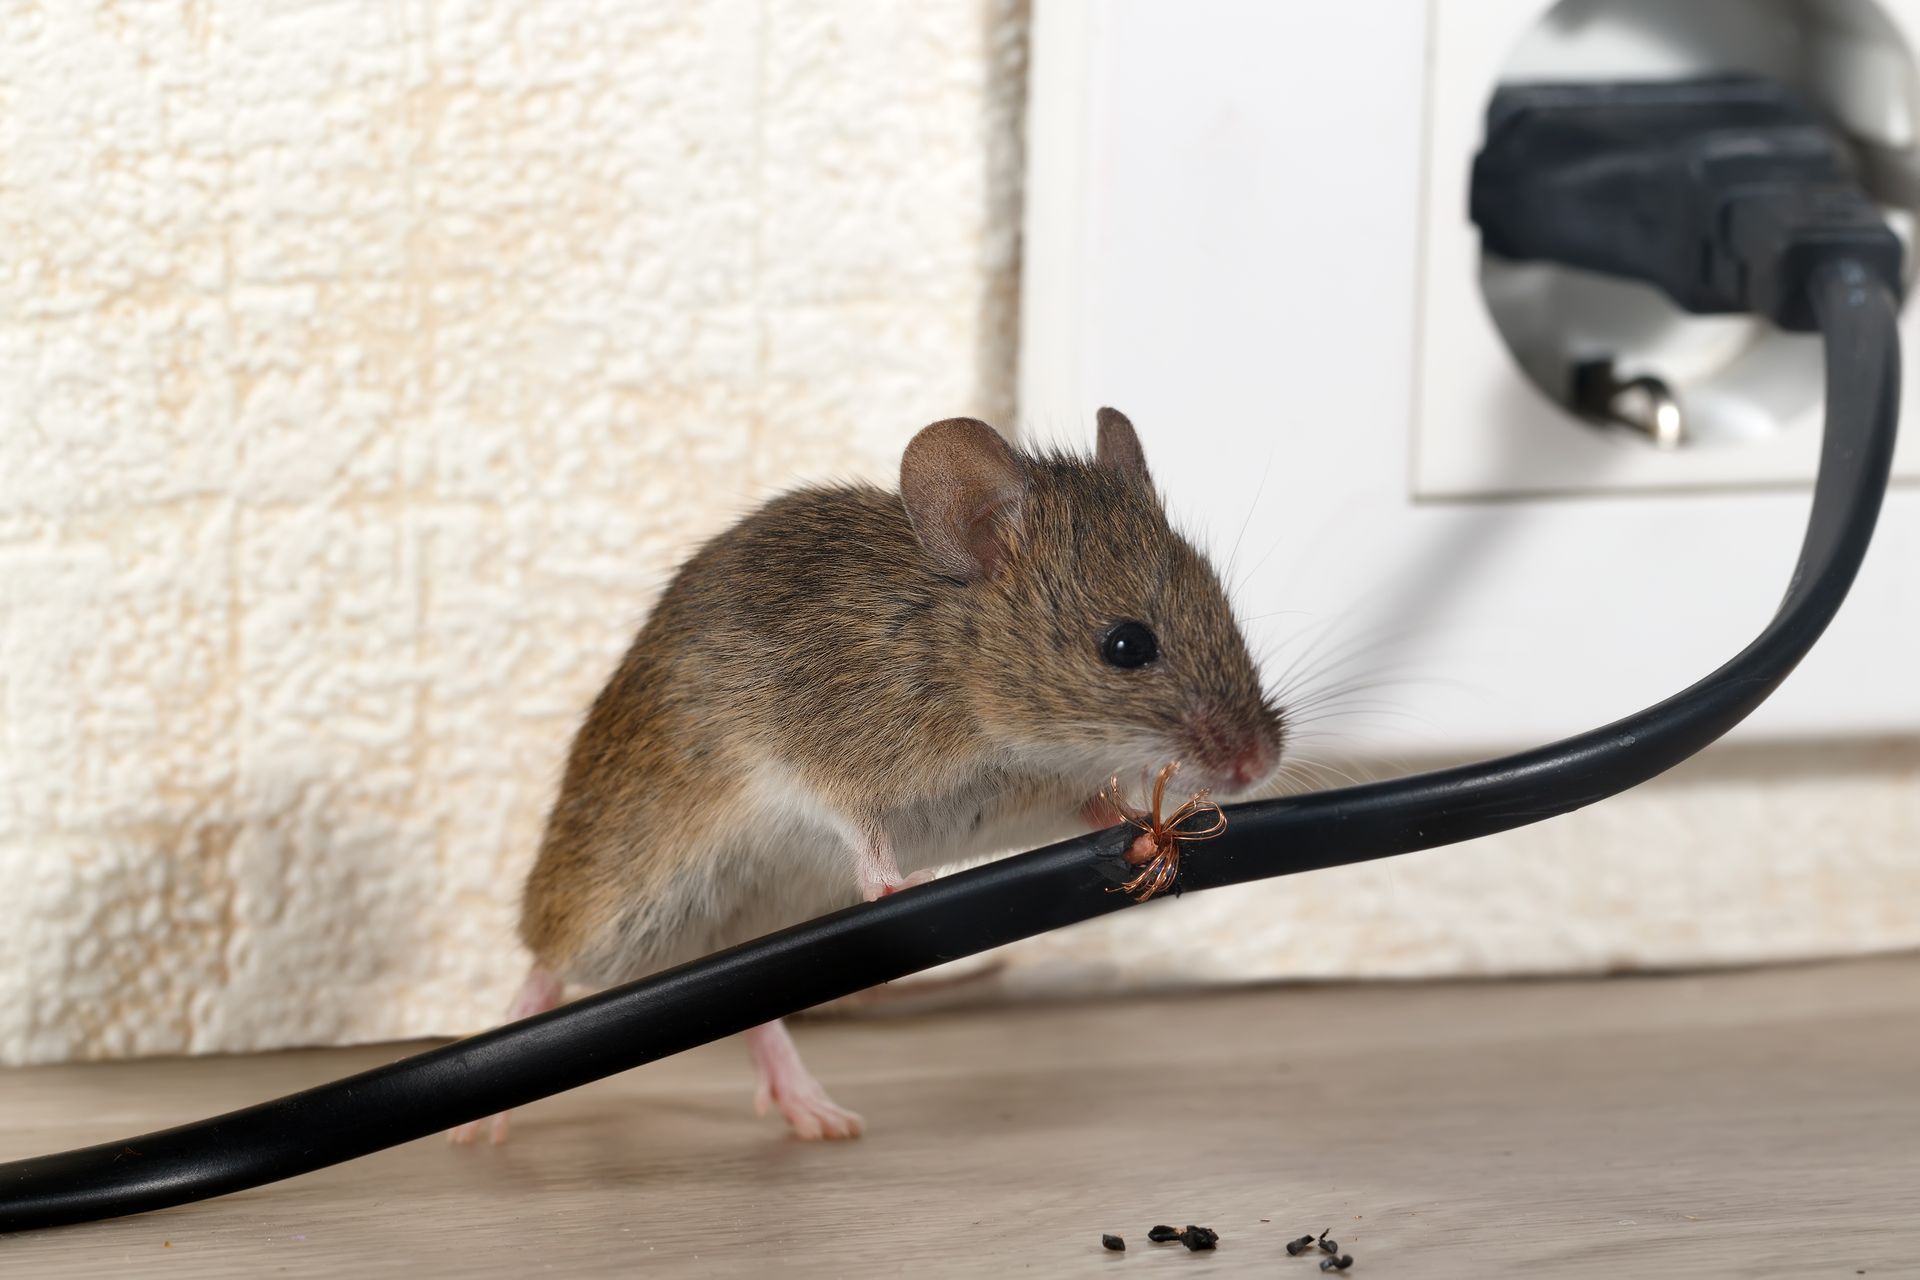 une souris est assise sur un câble électrique près d' une prise électrique .